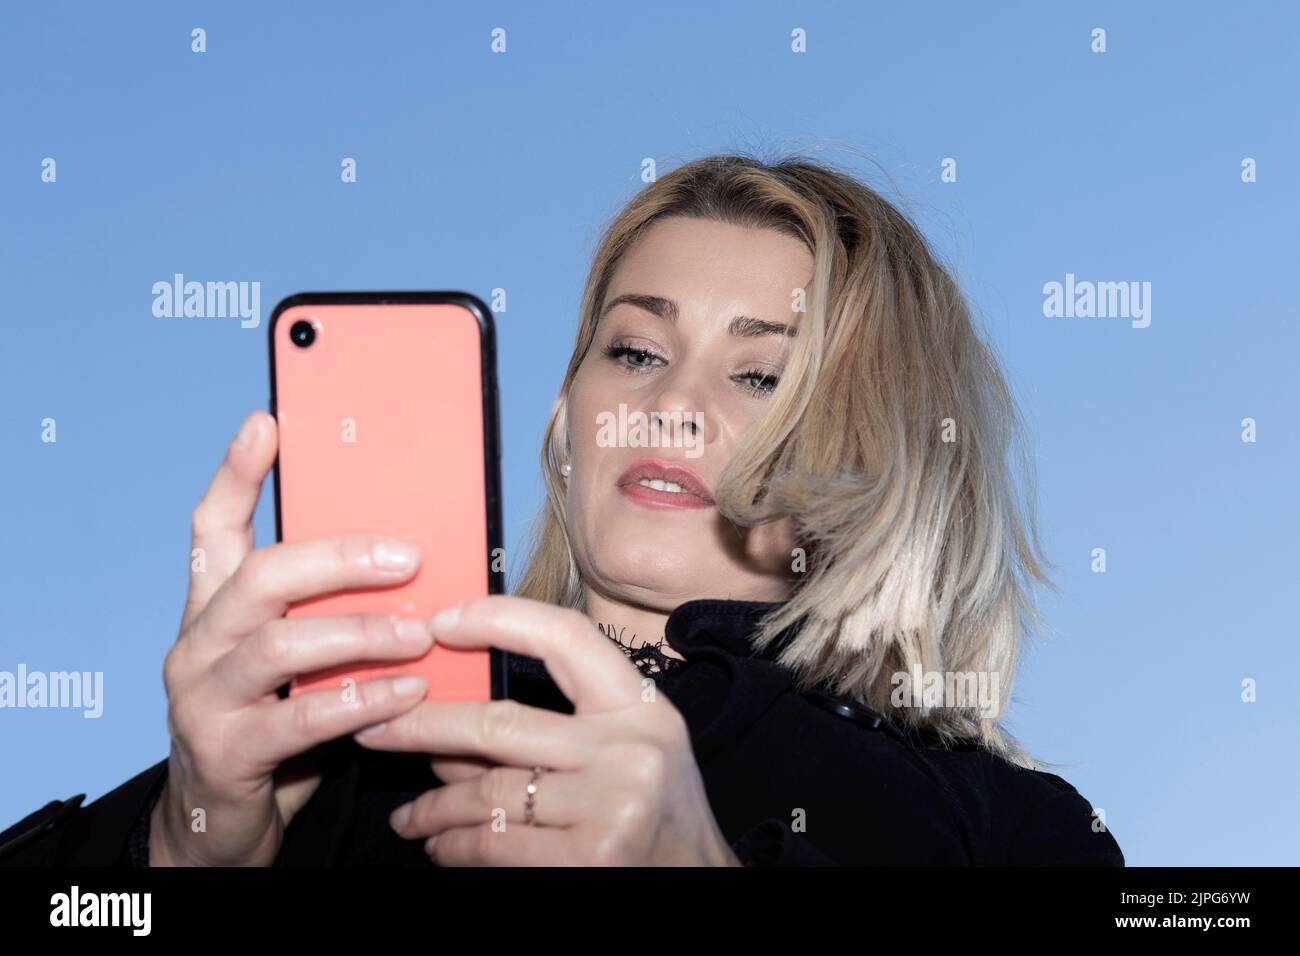 belle femme blonde regardant un téléphone cellulaire rouge avec le ciel derrière Banque D'Images